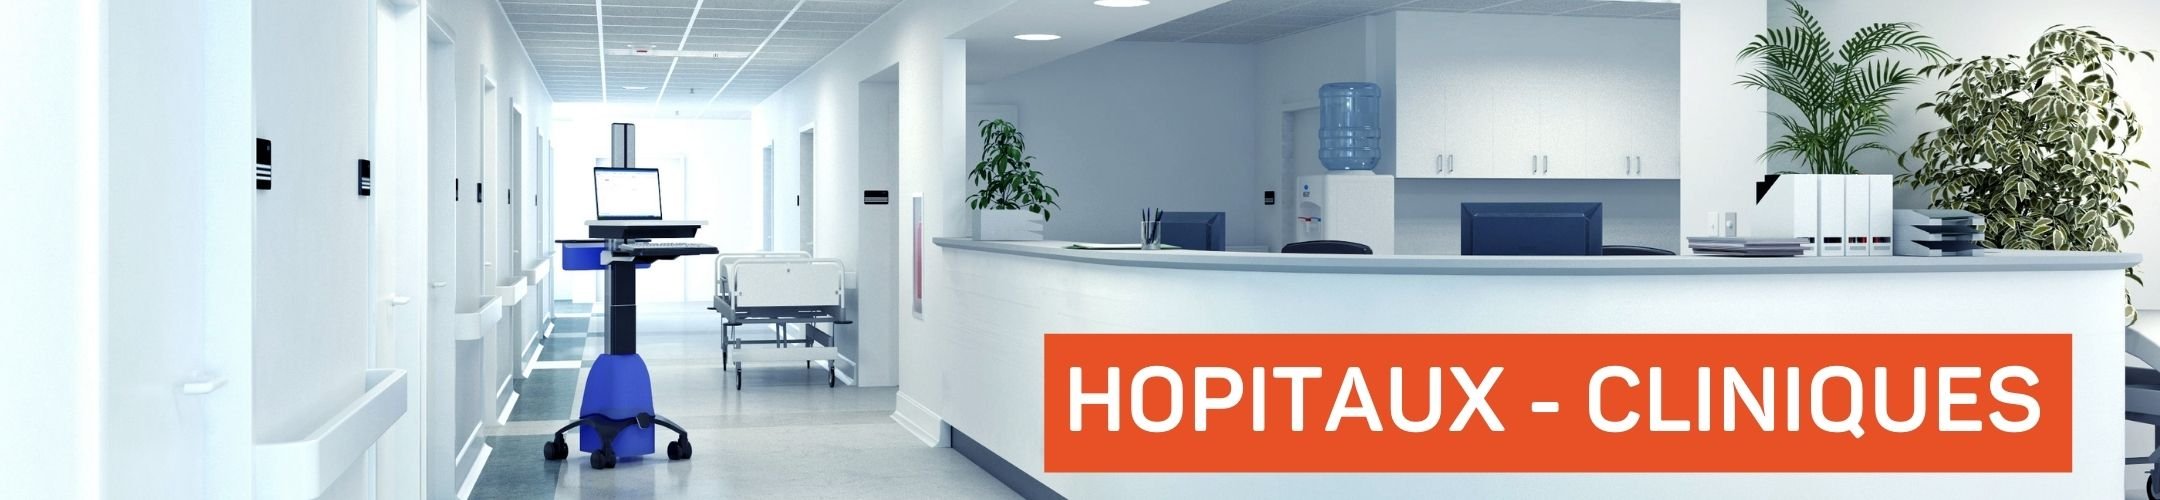 hôpitaux cliniques